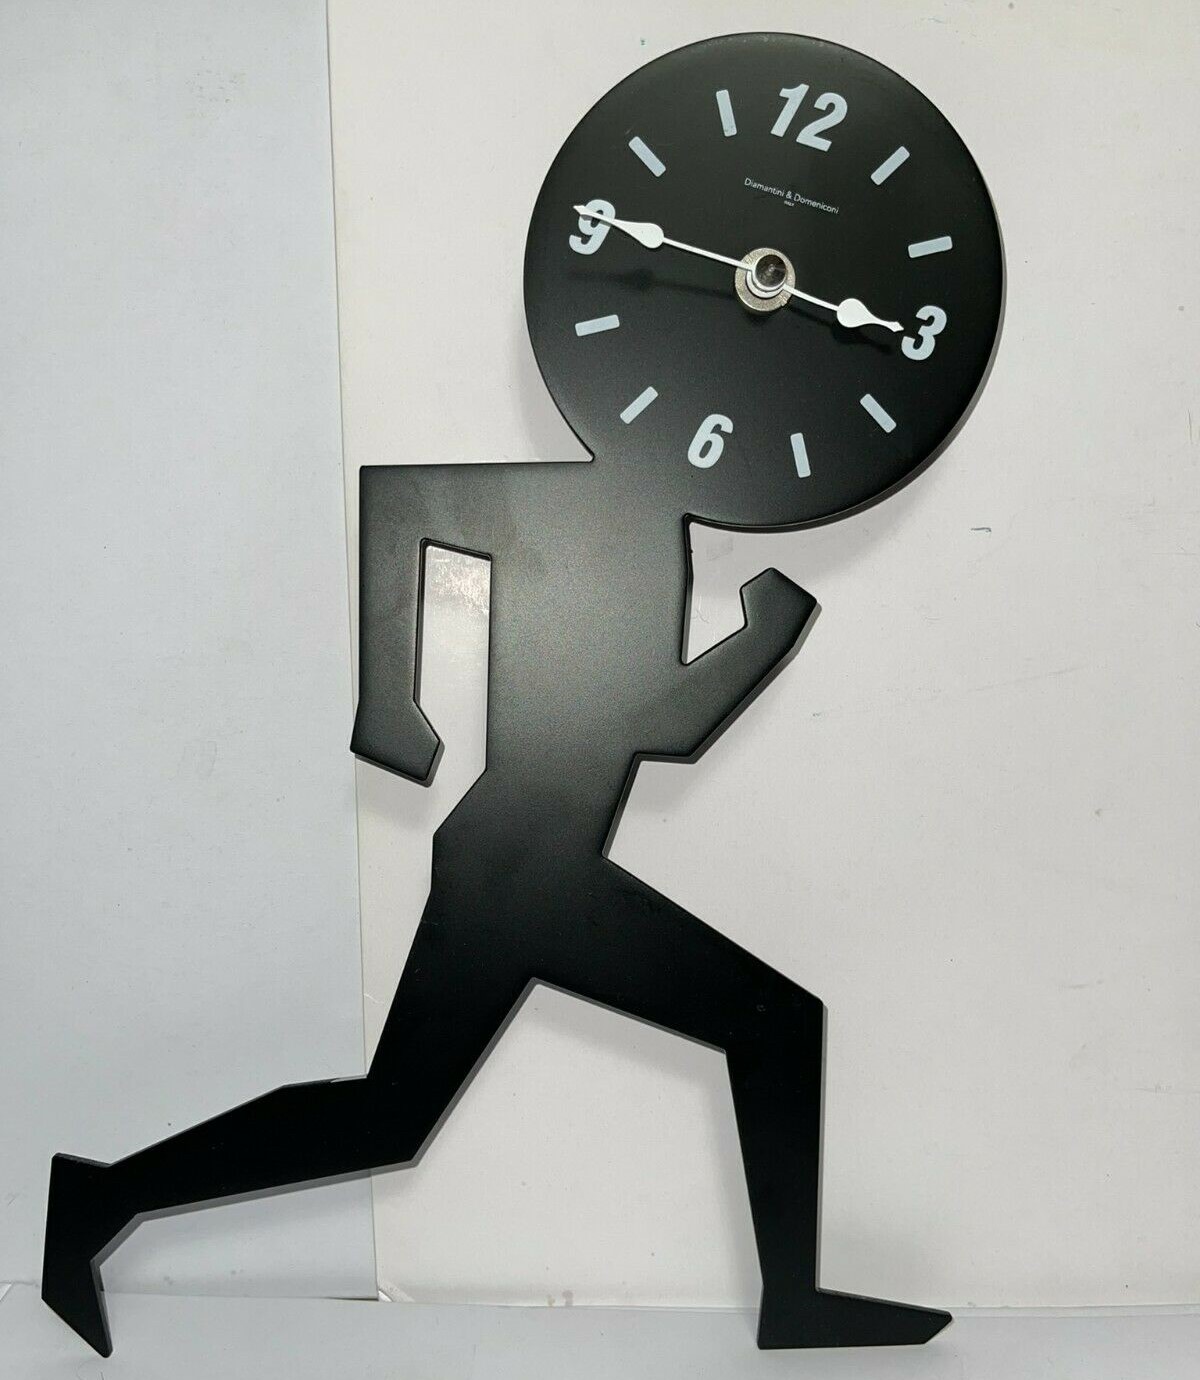 Laser Cut Uomino Running Man Wall Clock Free Vector